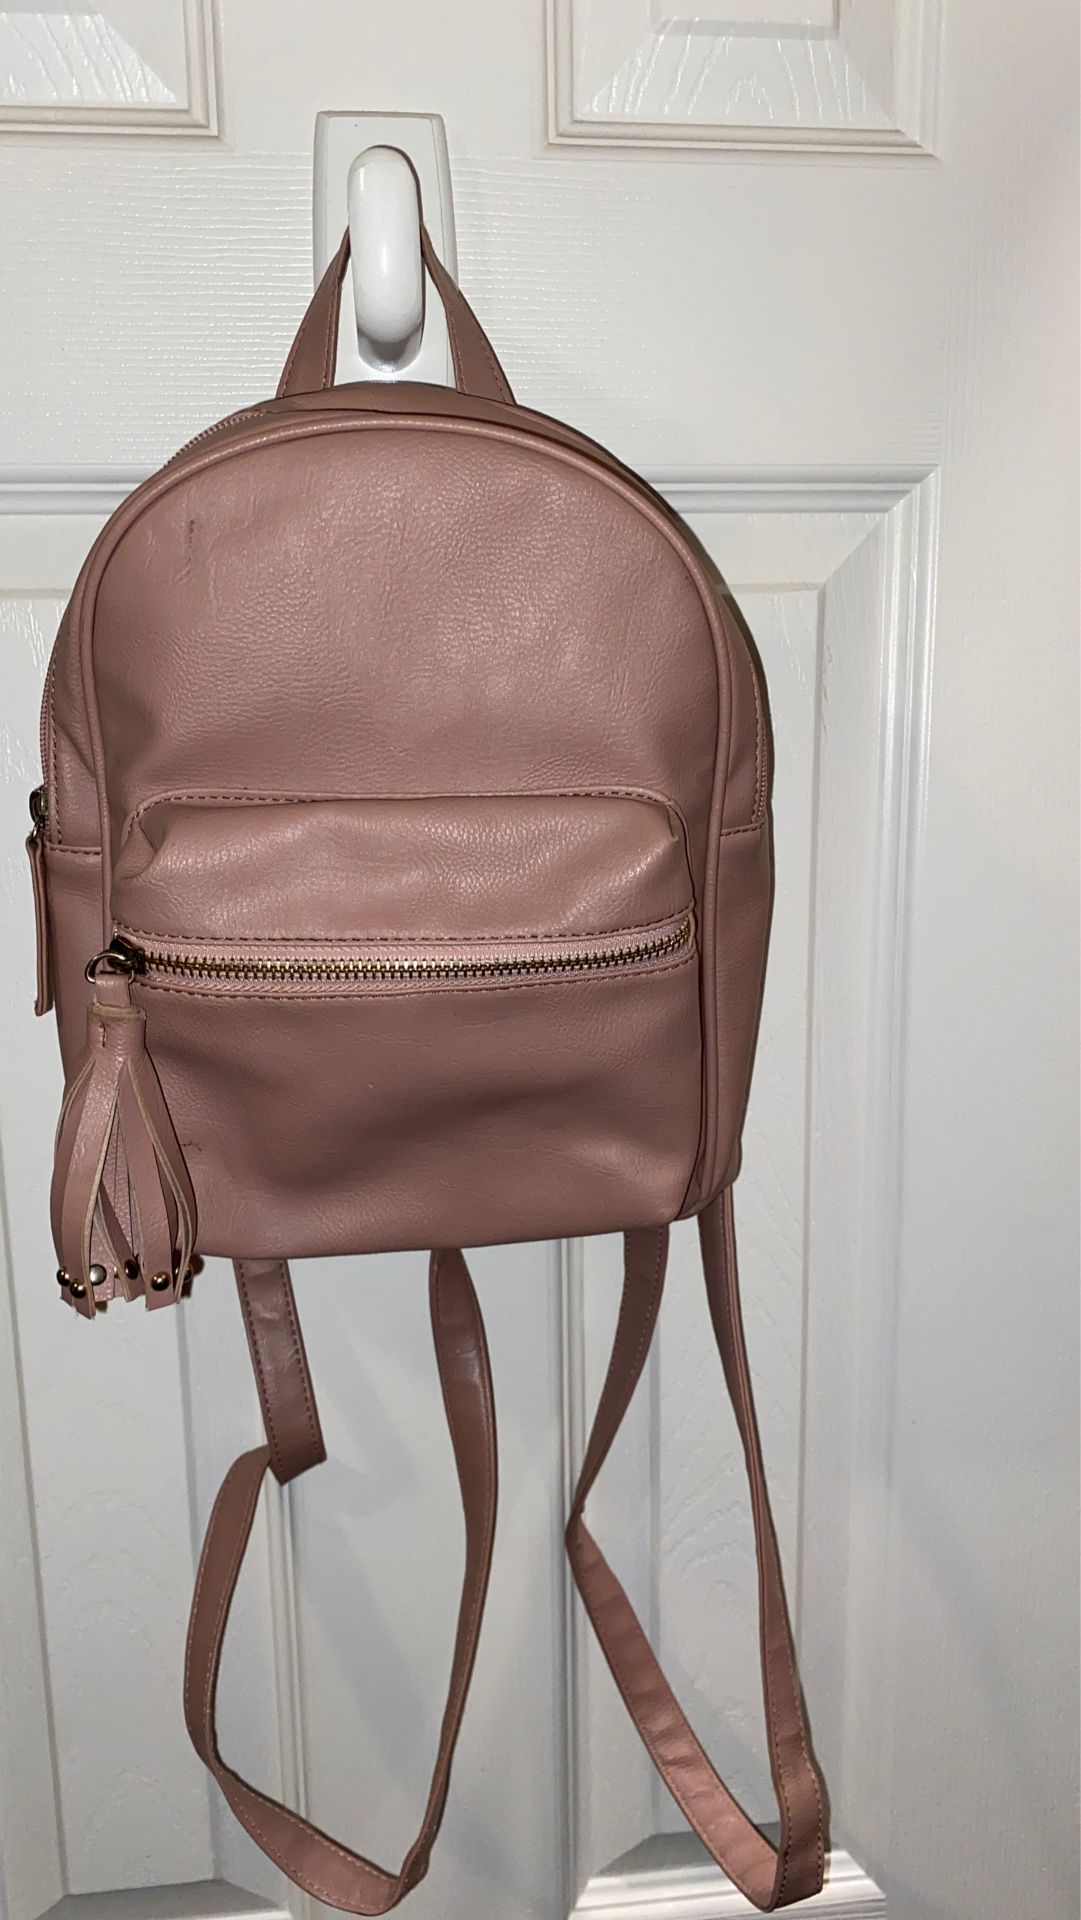 pink bag/backpack mini